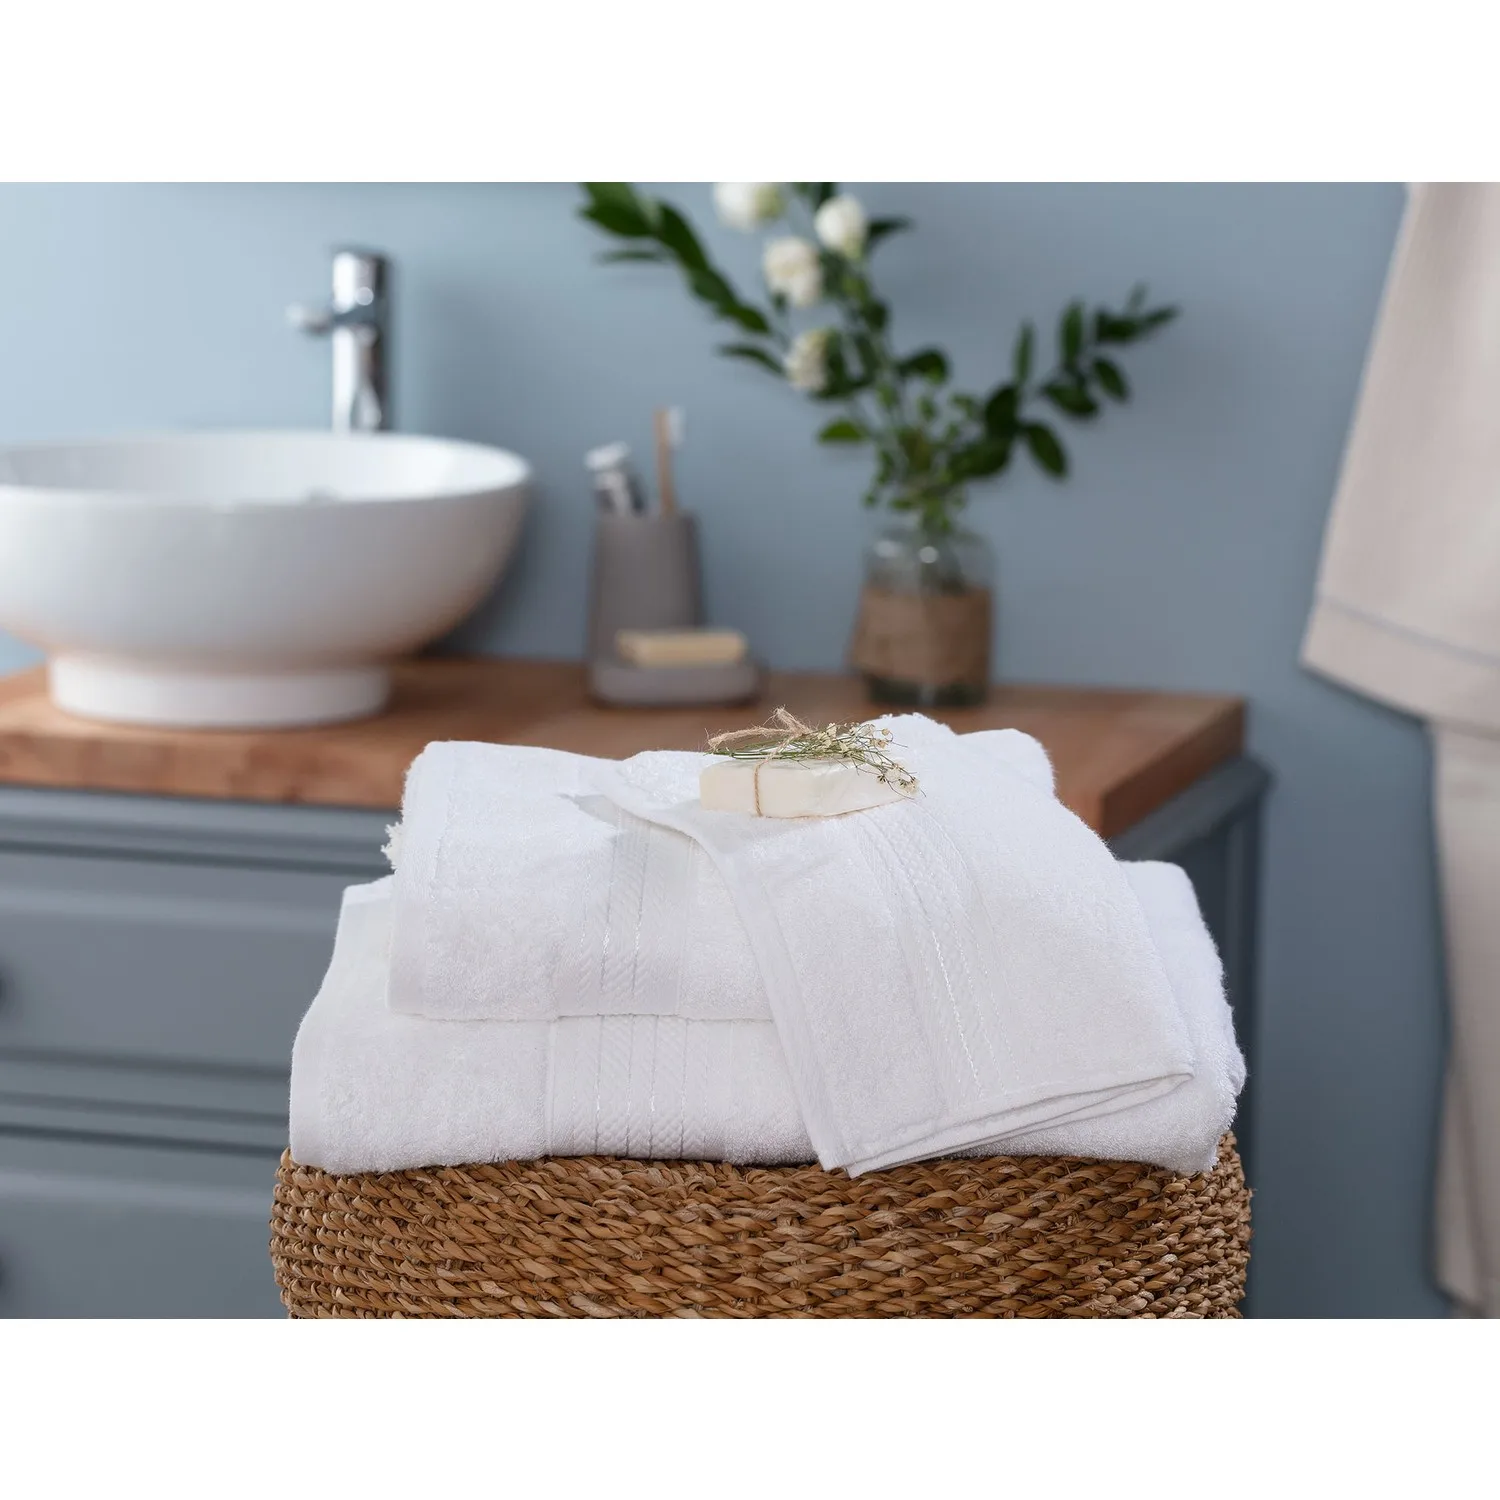 

OceanLand Bath Towel 90x150 cm Home Bathroom Viscose Cotton Absorbent Soft Colorful Powder-Indigo-White-Dark Plum-Ecru